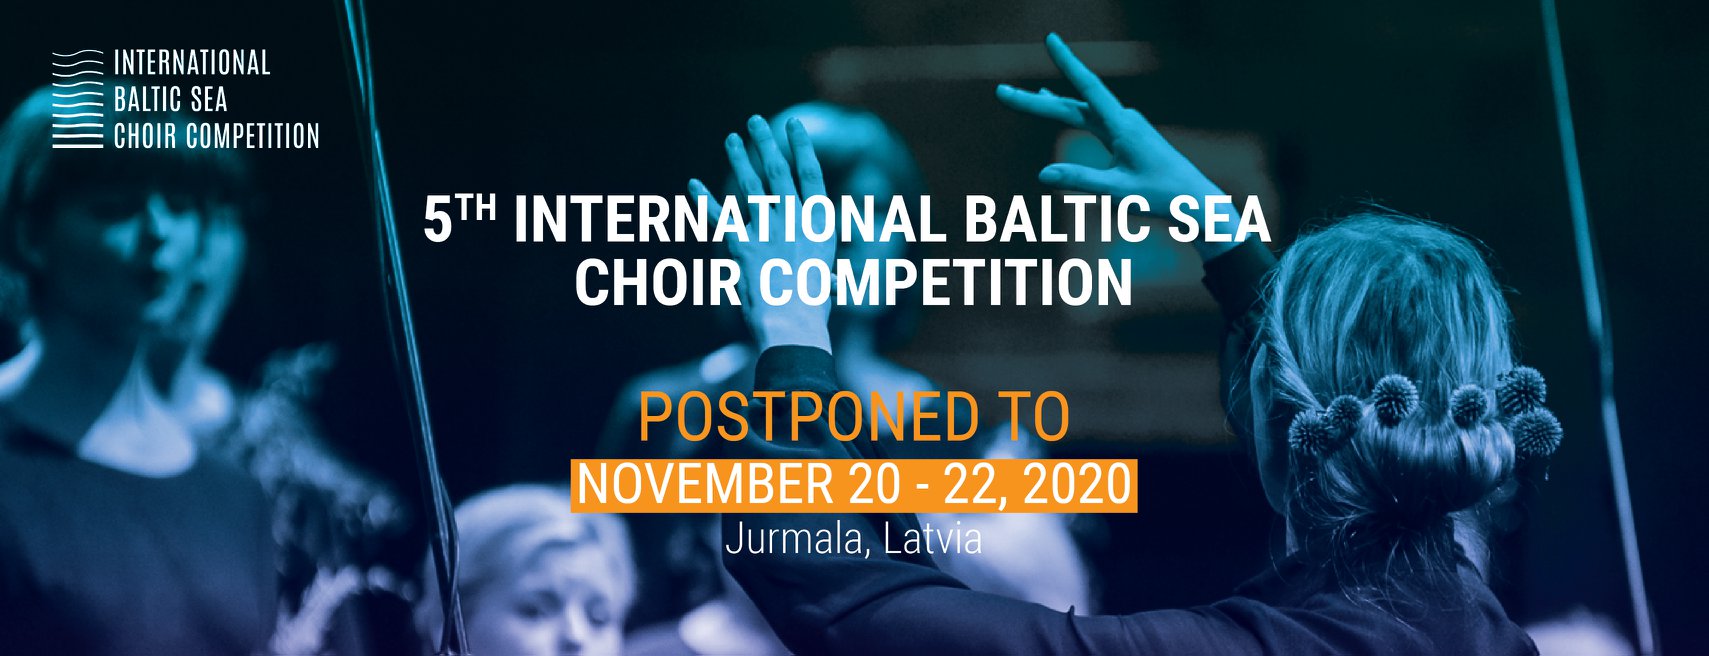 Rahvusvaheline Balti Mere Koorikonkurss Jurmalas kutsub koore osalema!